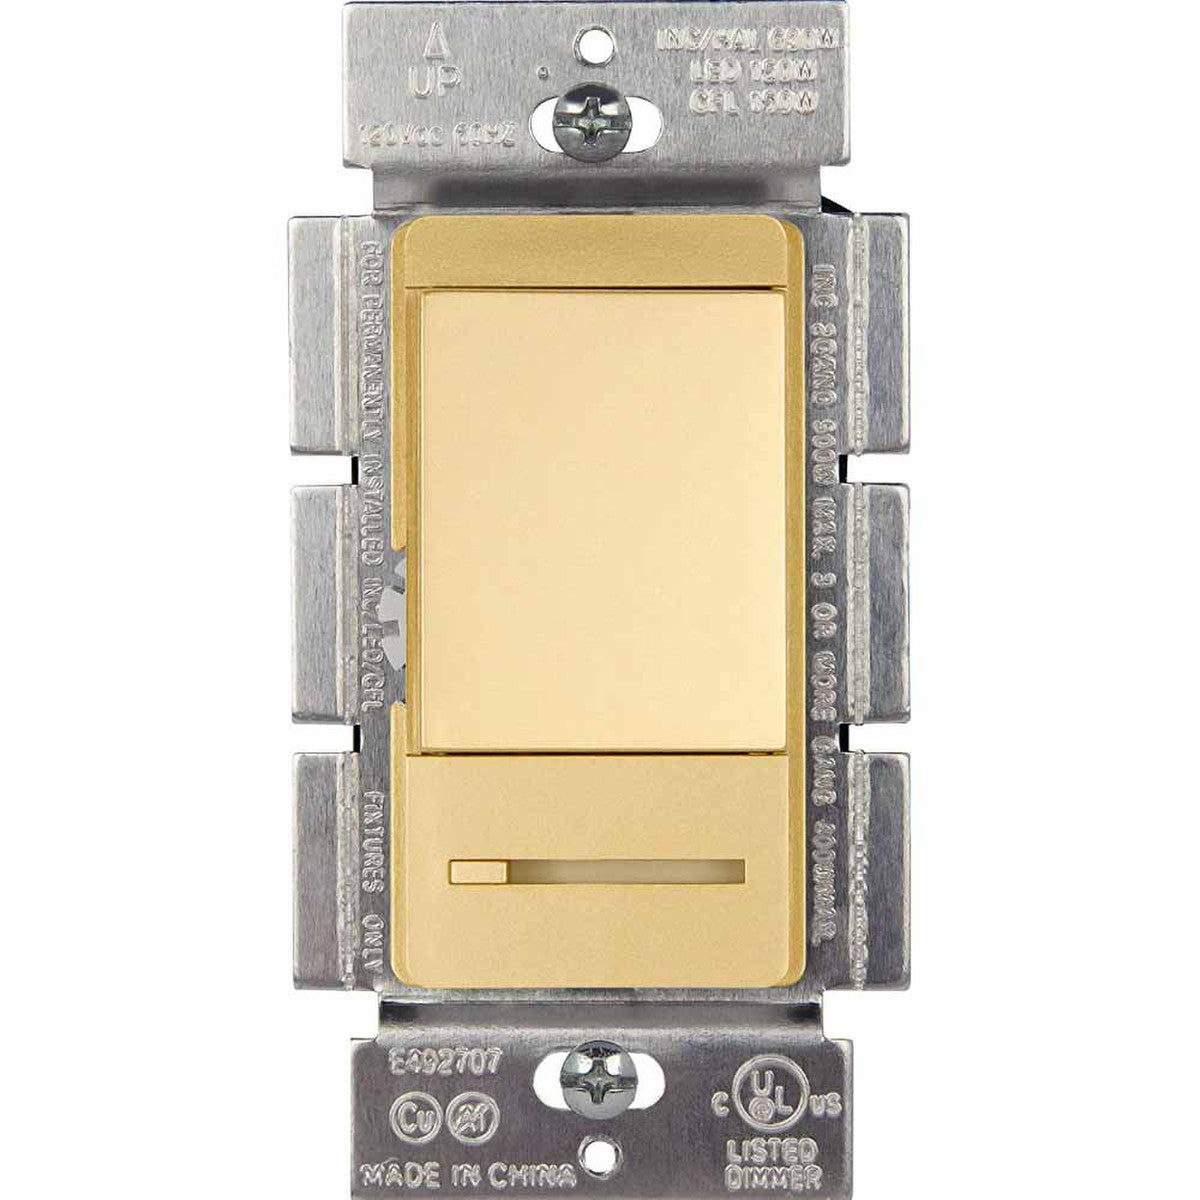 Elite Series 150-Watt Single Pole/3-Way LED Dimmer Switch